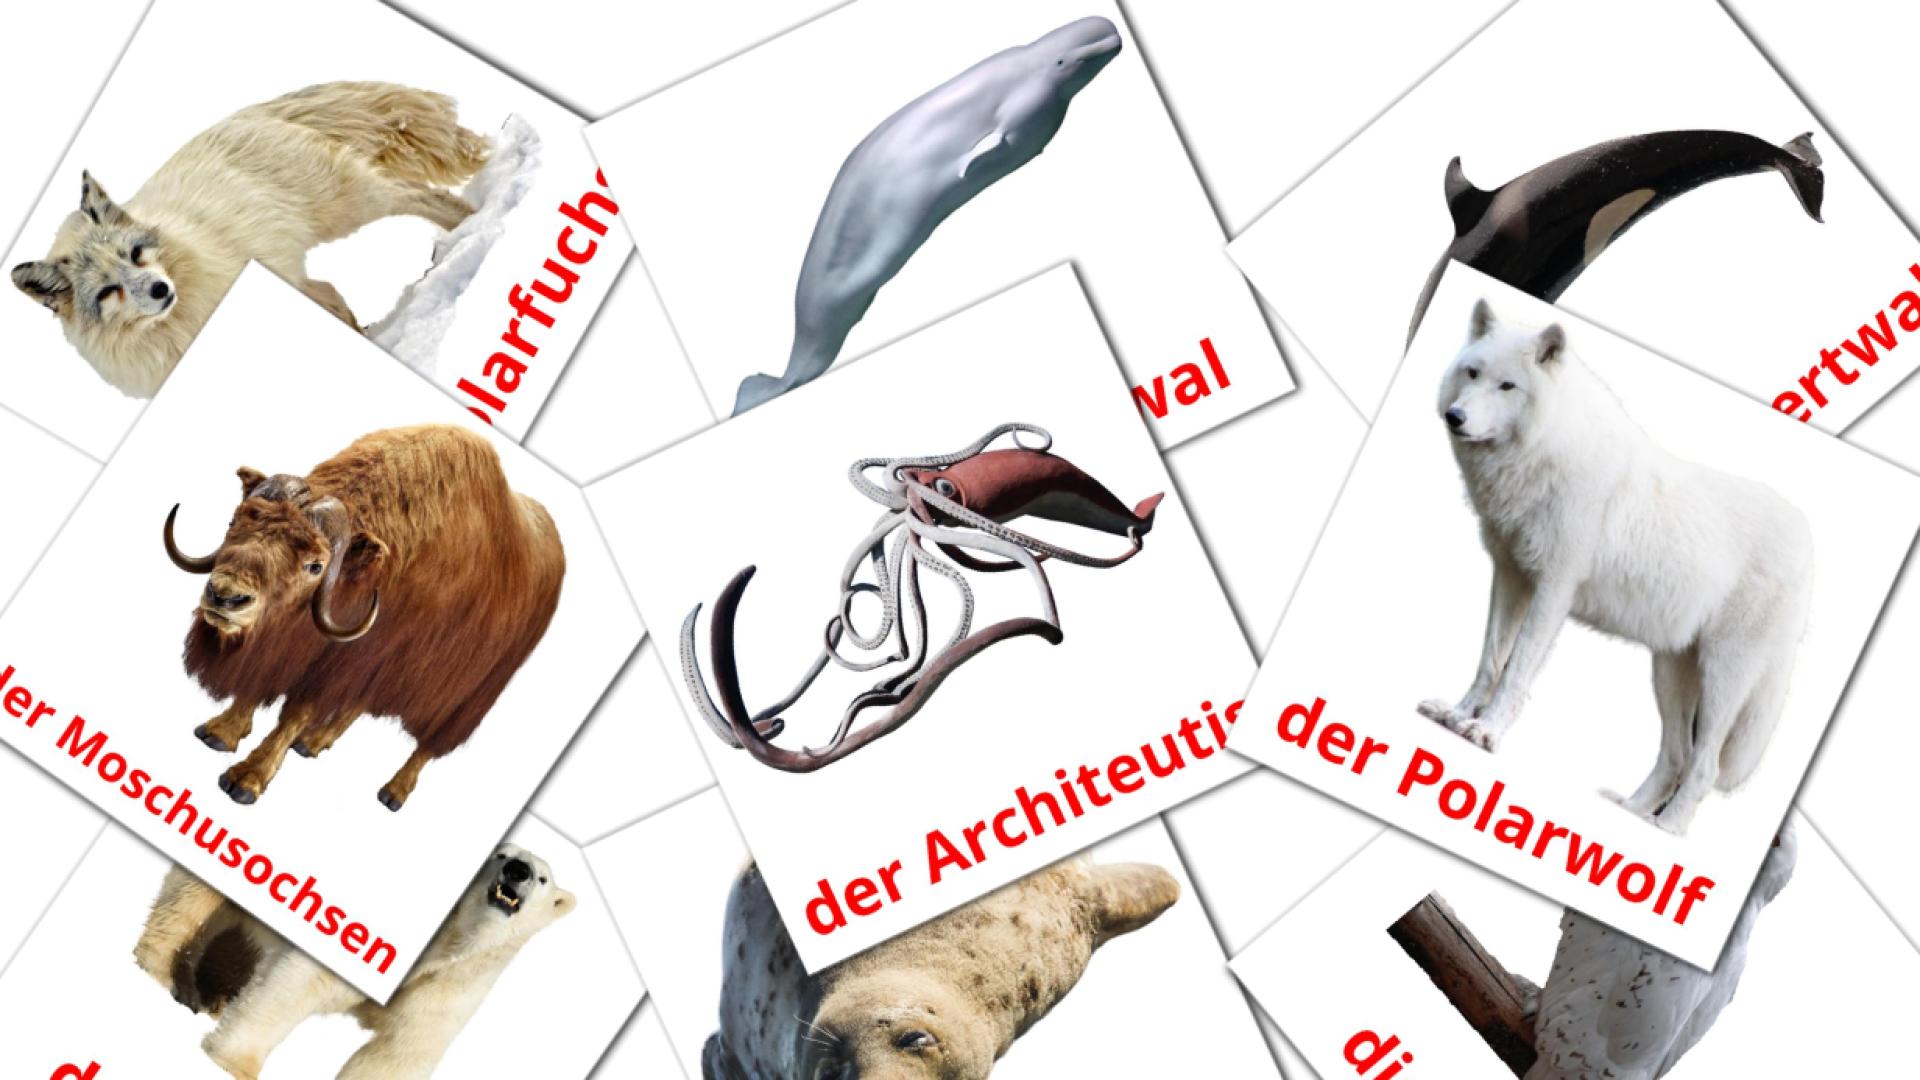 Les Animaux de l'Arctique - cartes de vocabulaire allemand